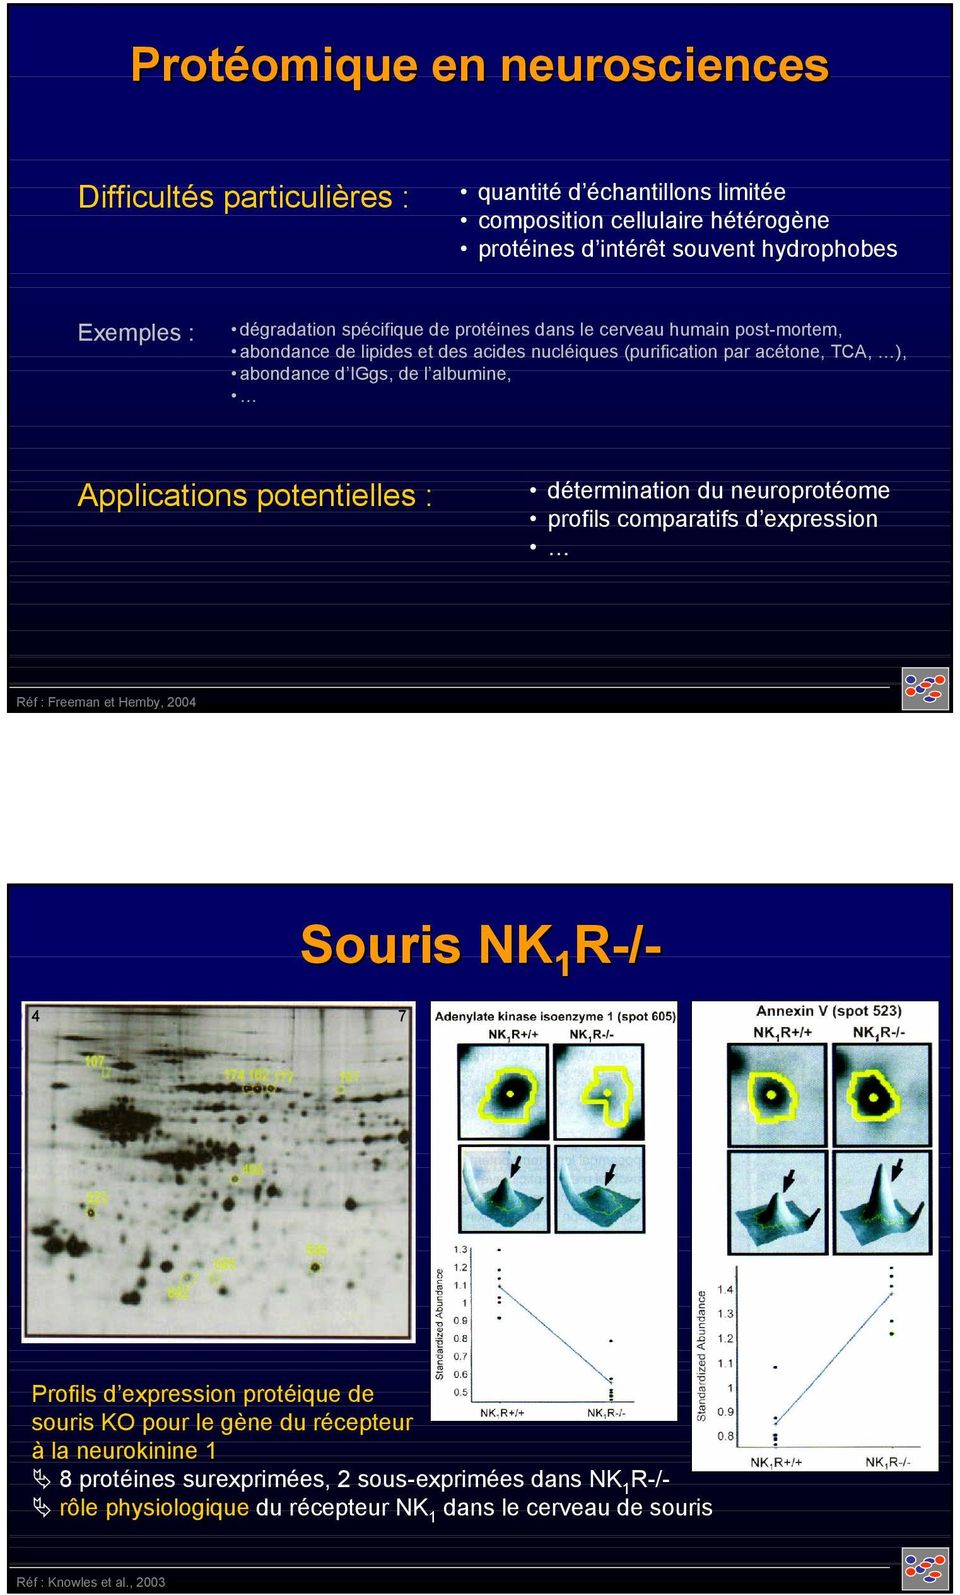 albumine, Applications potentielles : détermination du neuroprotéome profils comparatifs d expression Réf : Freeman et Hemby, 2004 Souris NK 1 R-/- 4 7 Profils d expression protéique